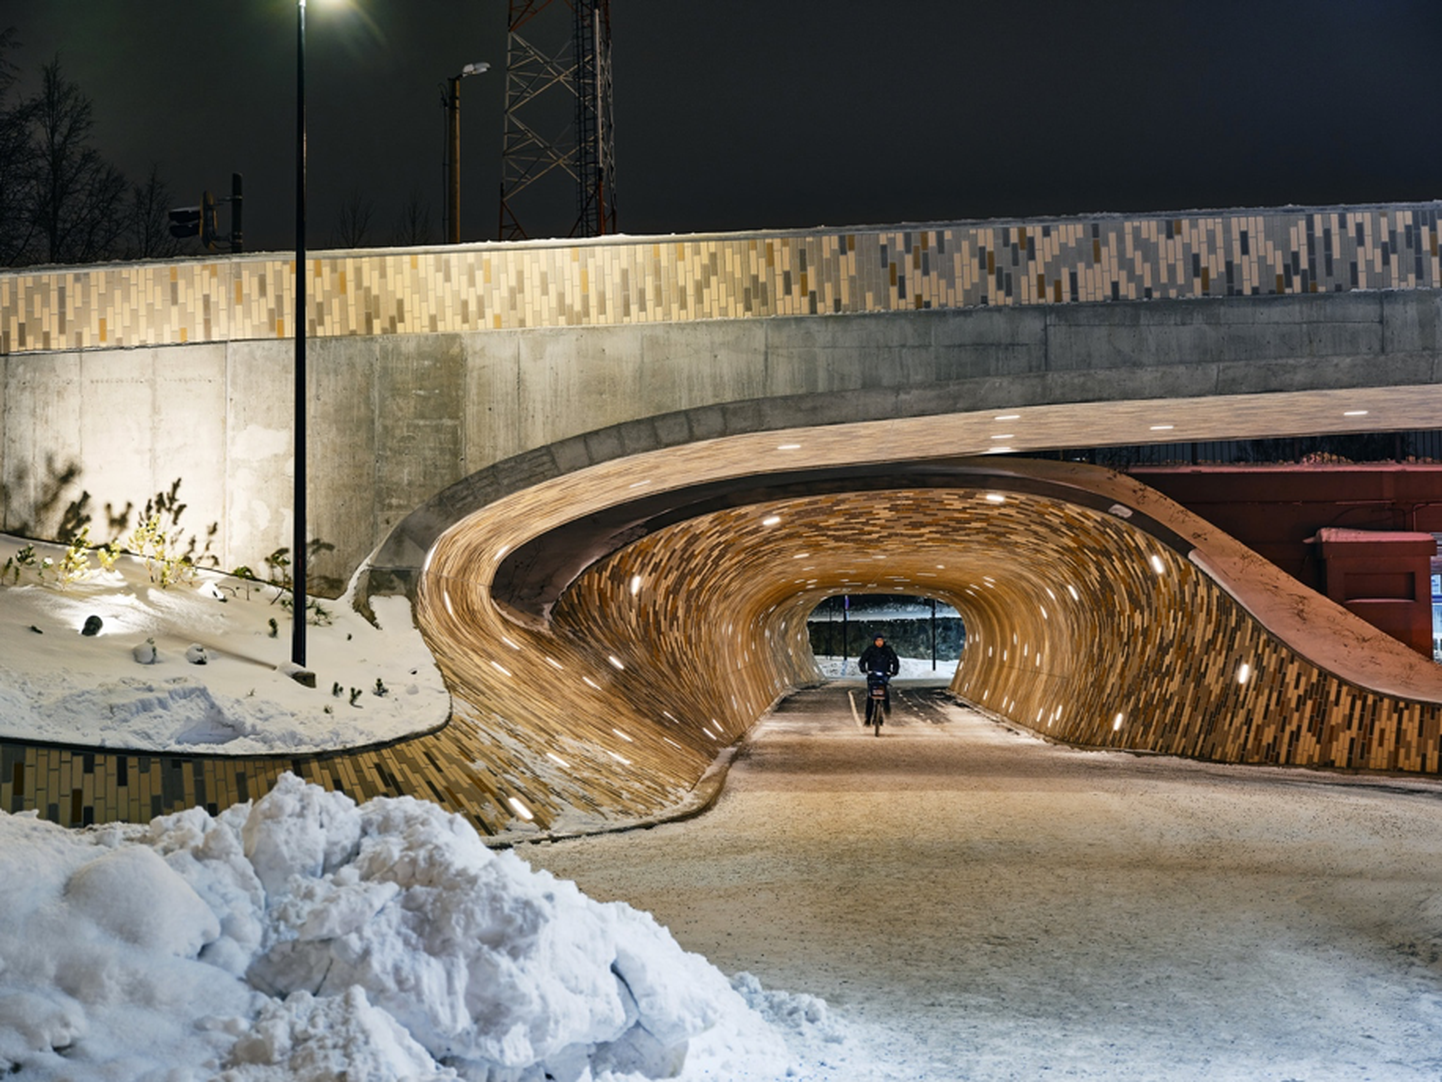 Läinud aasta lõpus Riia tänaval valminud jalakäijate sild ja tunnelid on tänavune parim rajatis.